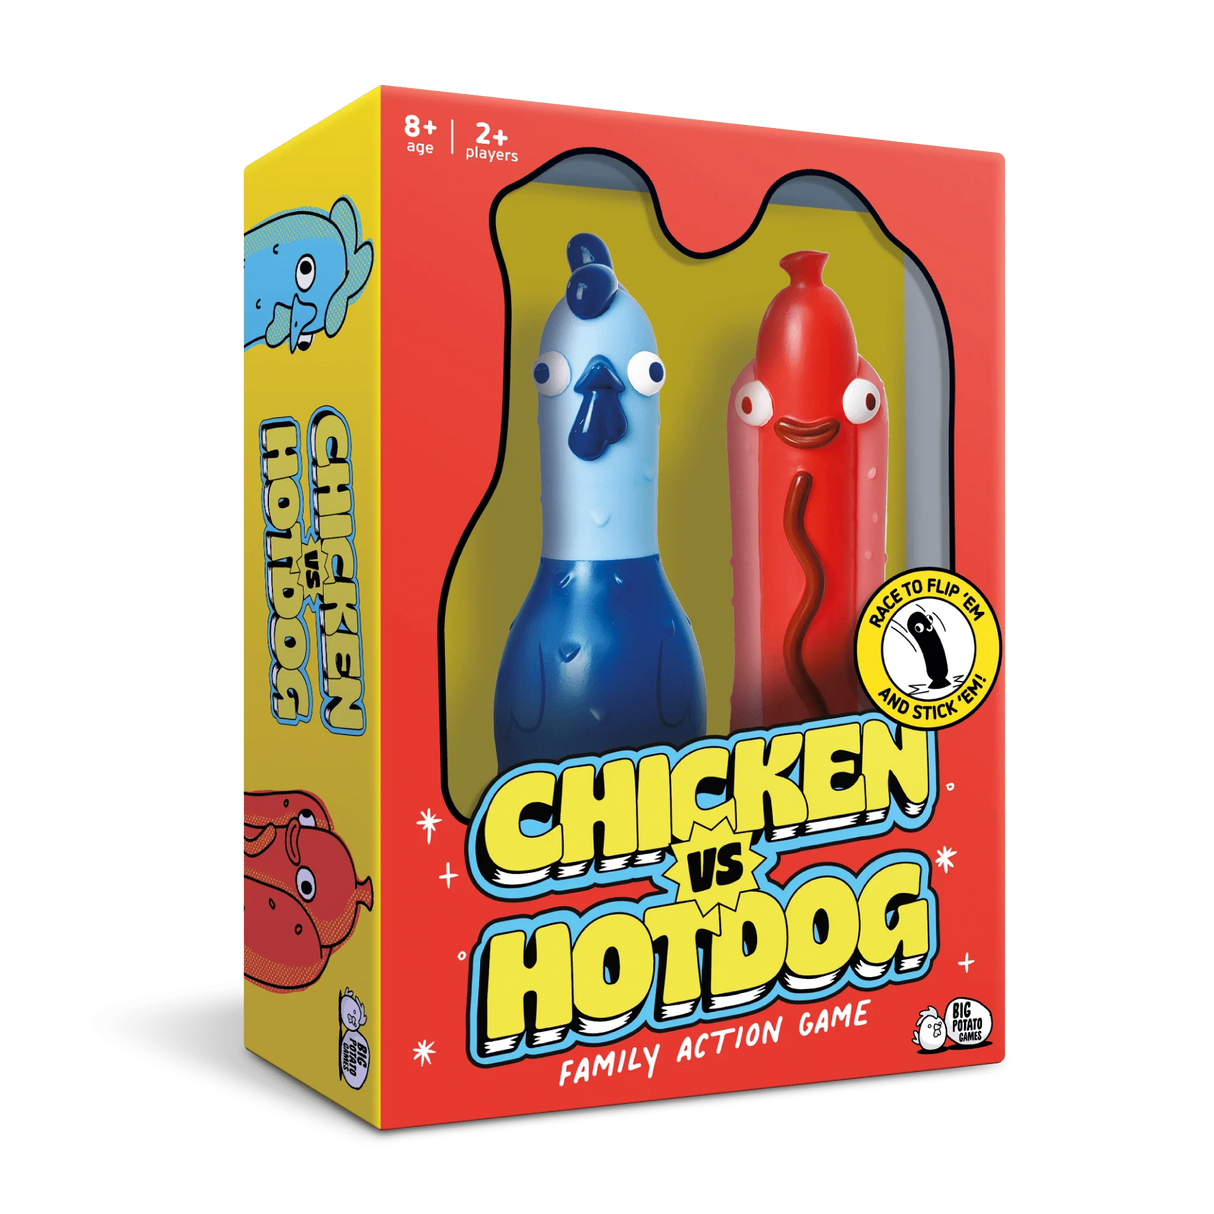 Chicken vs Hotdog Game - Hobbytech Toys